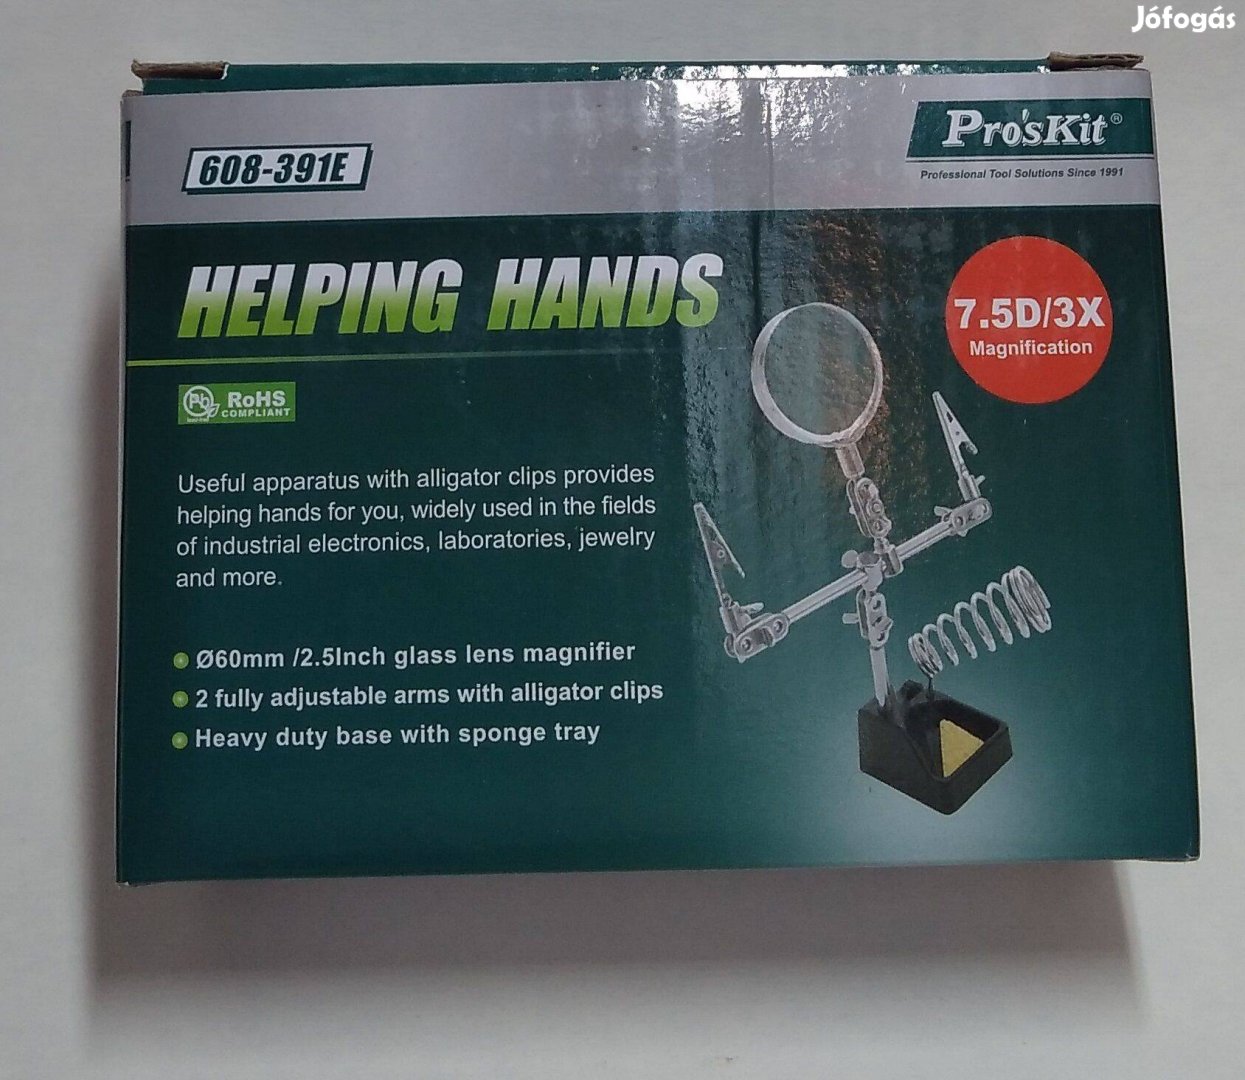 3.kéz / Segítő kéz / Helping Hands